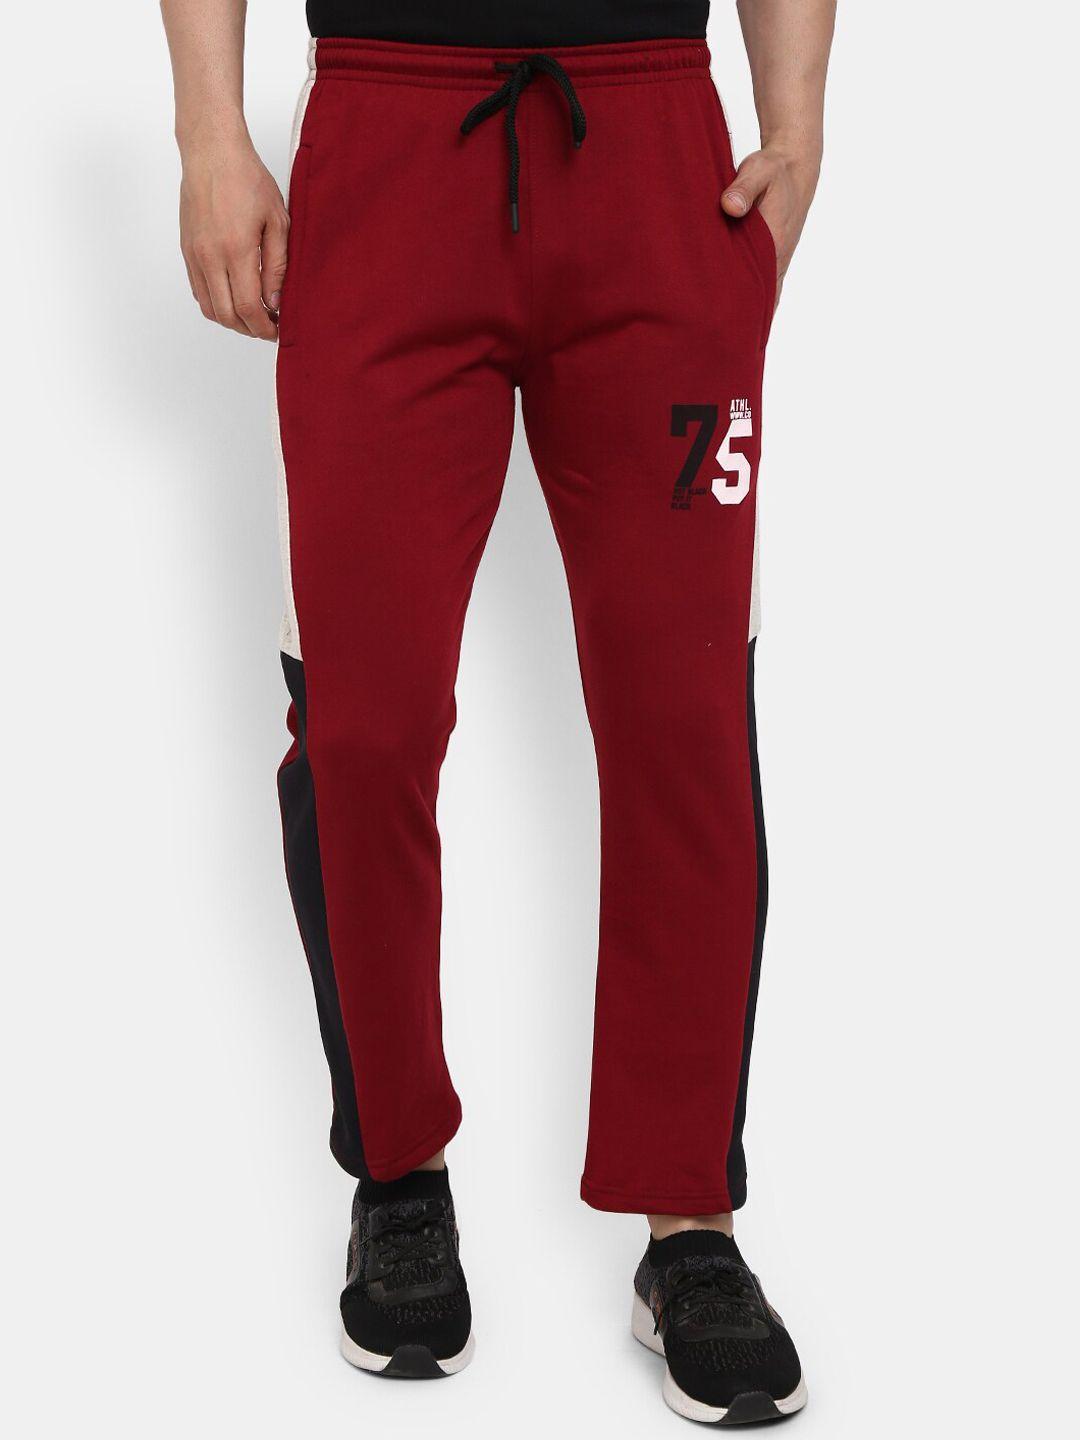 v-mart men red & black solid cotton track pants